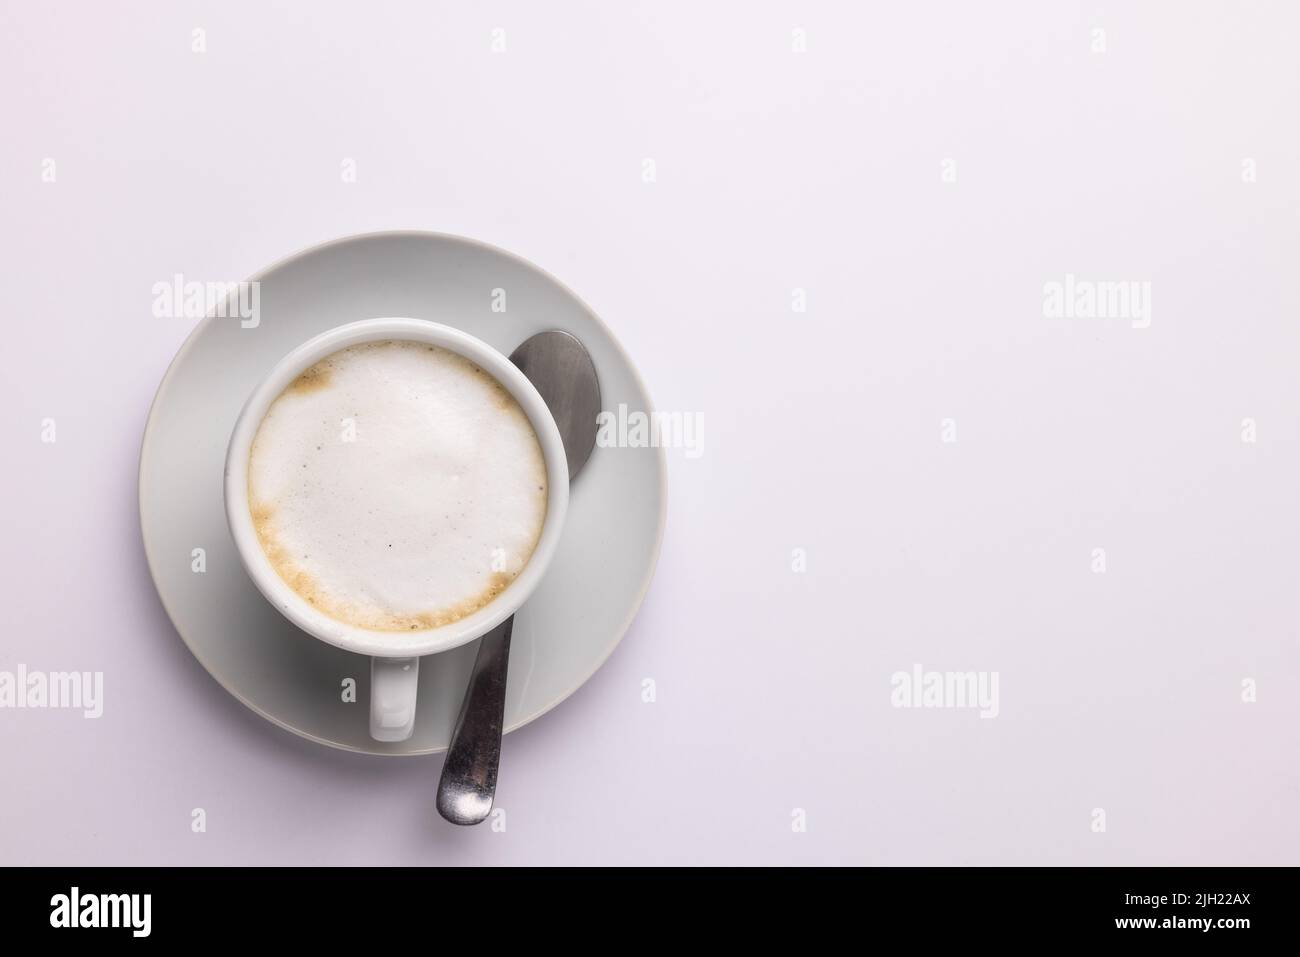 Immagine di una tazza di caffè bianca con latte su sfondo bianco Foto Stock